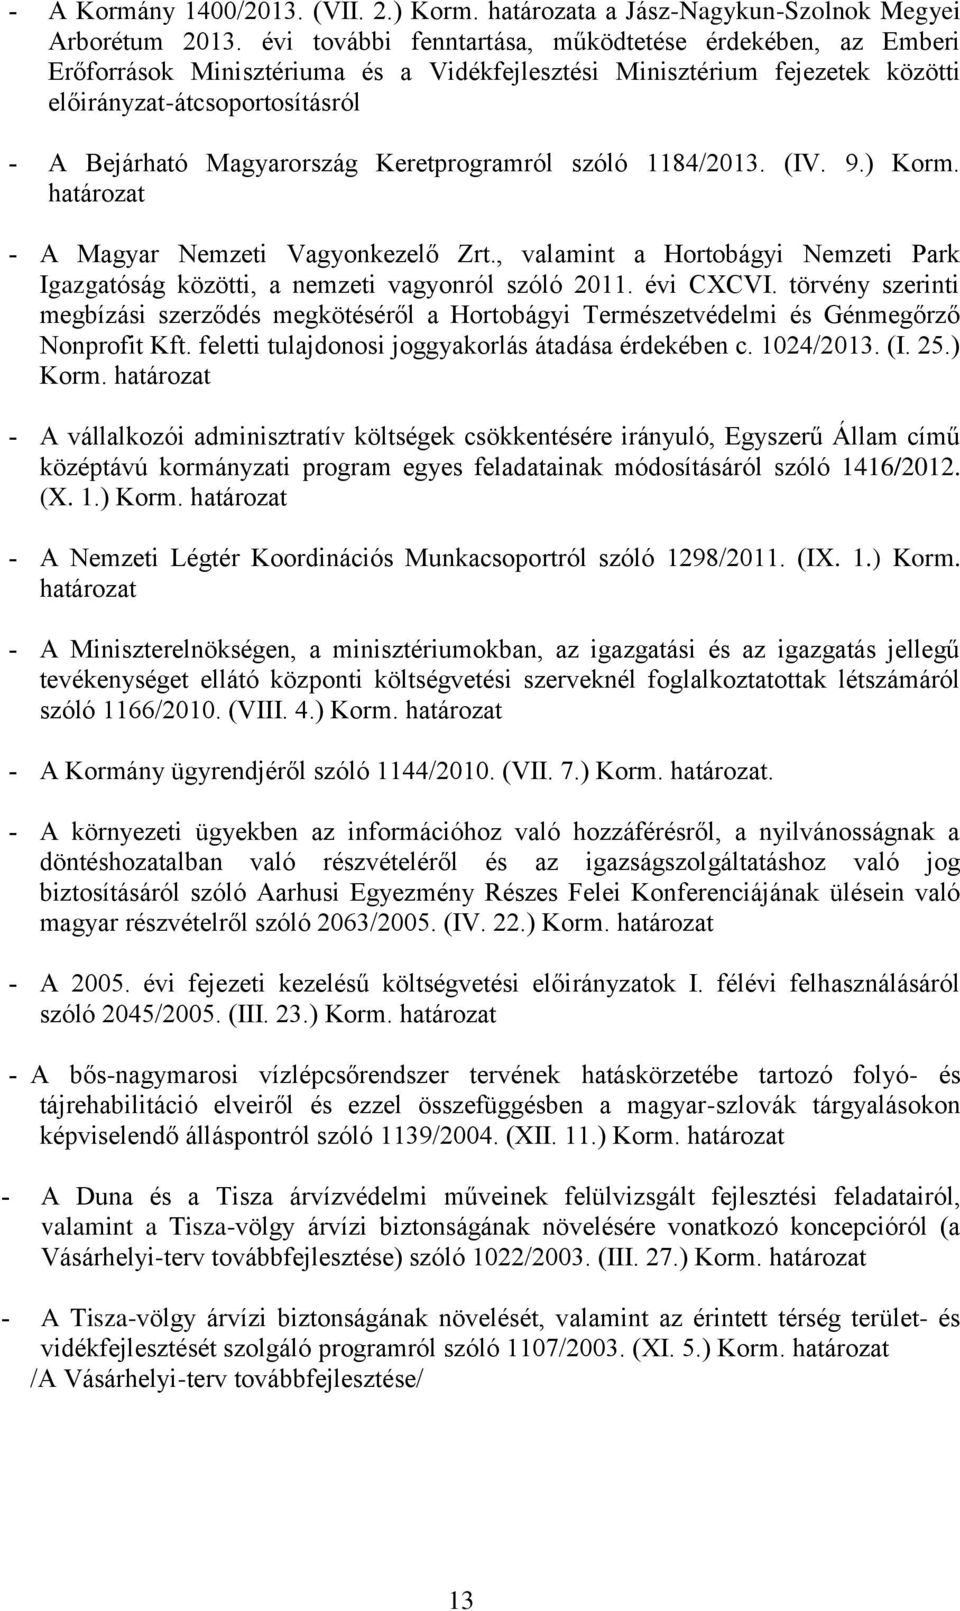 Keretprogramról szóló 1184/2013. (IV. 9.) Korm. határozat A Magyar Nemzeti Vagyonkezelő Zrt., valamint a Hortobágyi Nemzeti Park Igazgatóság közötti, a nemzeti vagyonról szóló 2011. évi CXCVI.